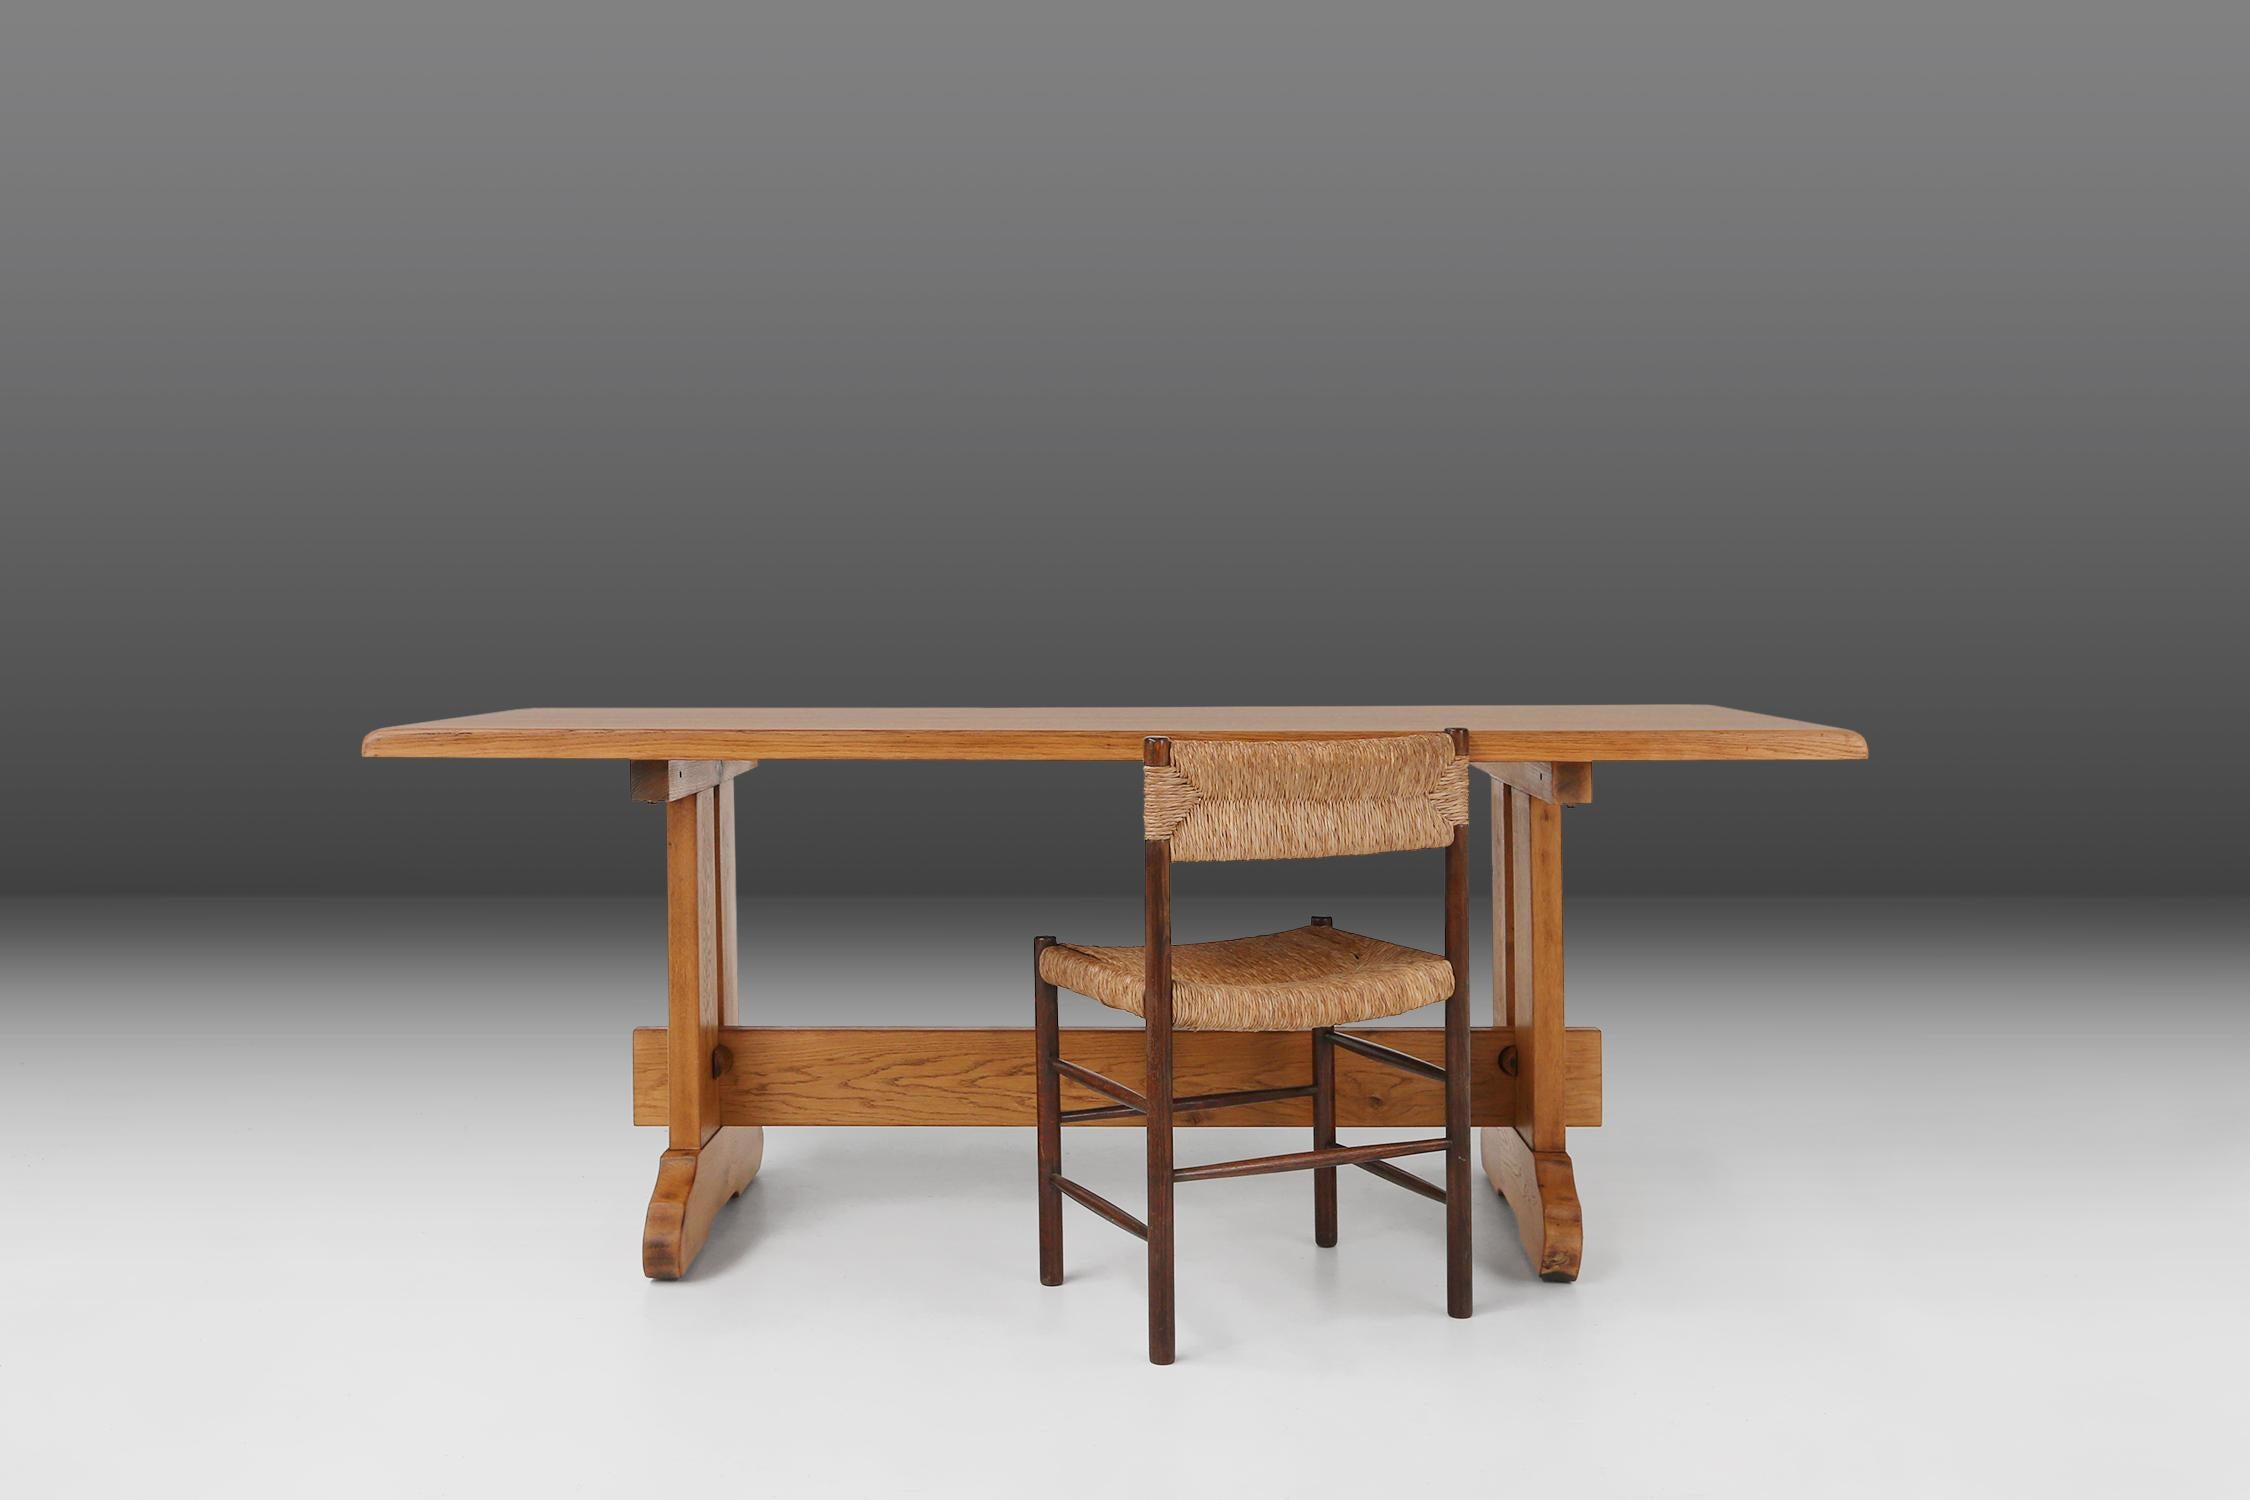 Frankreich / 1950er Jahre / Tisch / Eichenholz / Mitte des Jahrhunderts / Rustikal

Ein brutalistischer Eichentisch, der um 1950 in Frankreich im Stil der französischen Designerin Charlotte Perriand hergestellt wurde. Dieser Eichenholztisch aus der